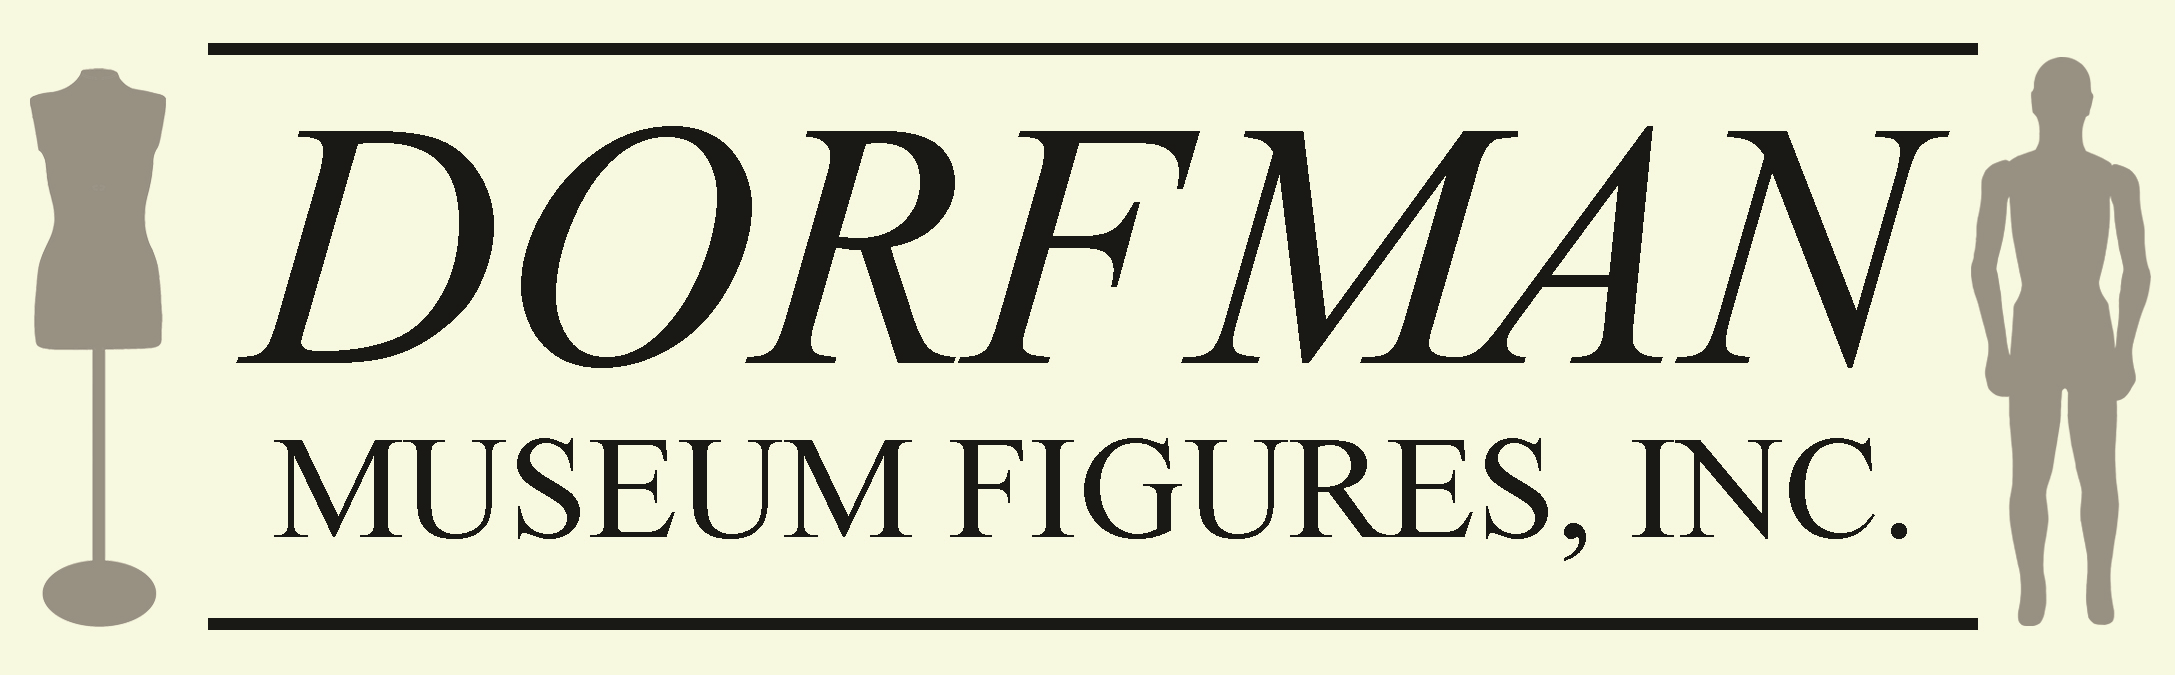 Dorfman Museum Figures, Inc.